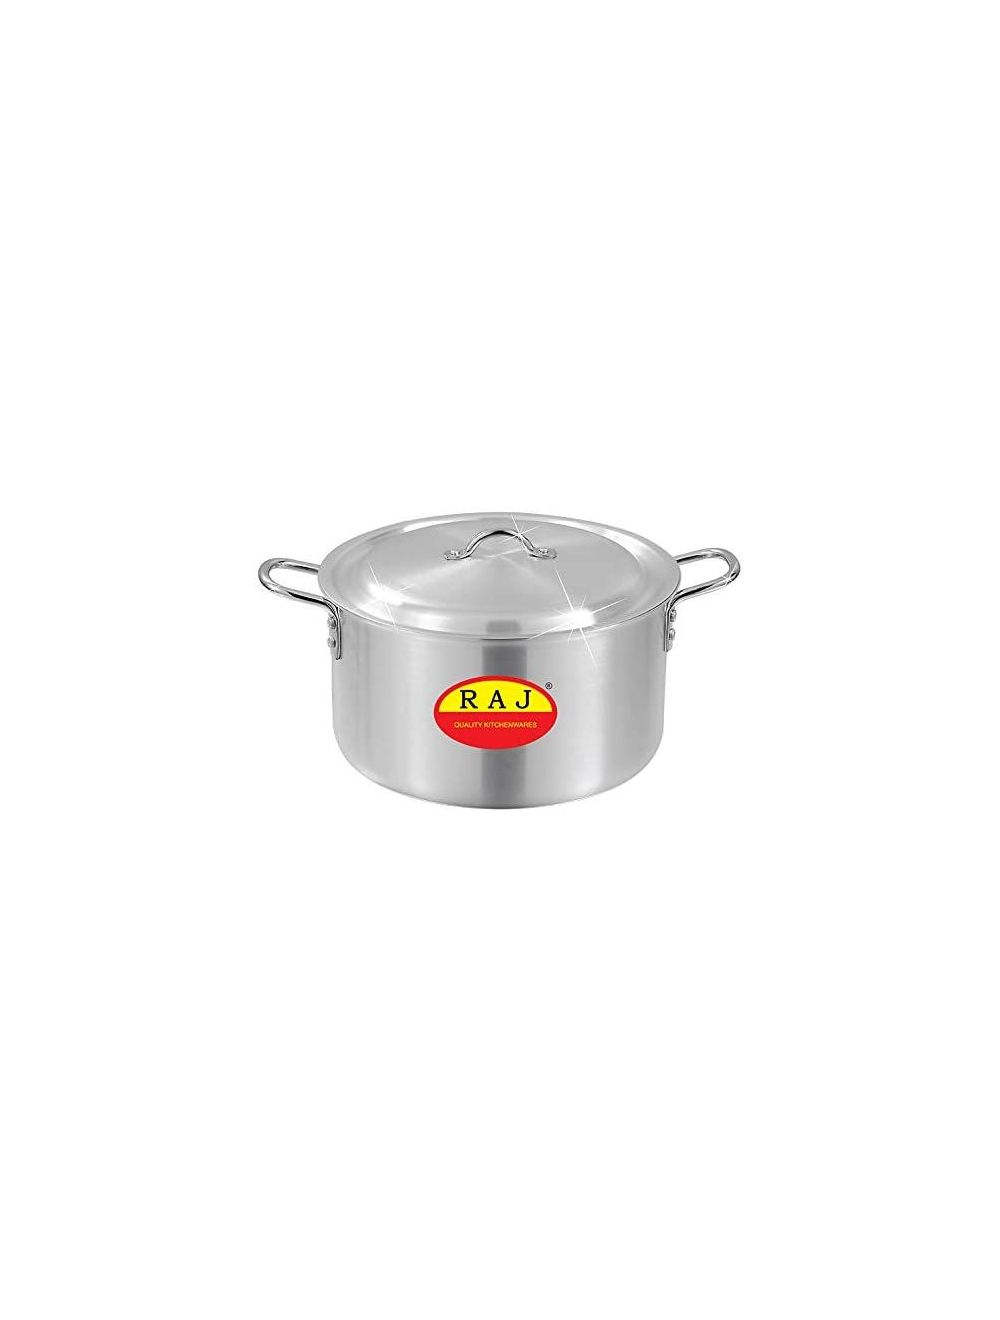 Raj Aluminium Cooking Pot Set With Lid, Silver, RATP04